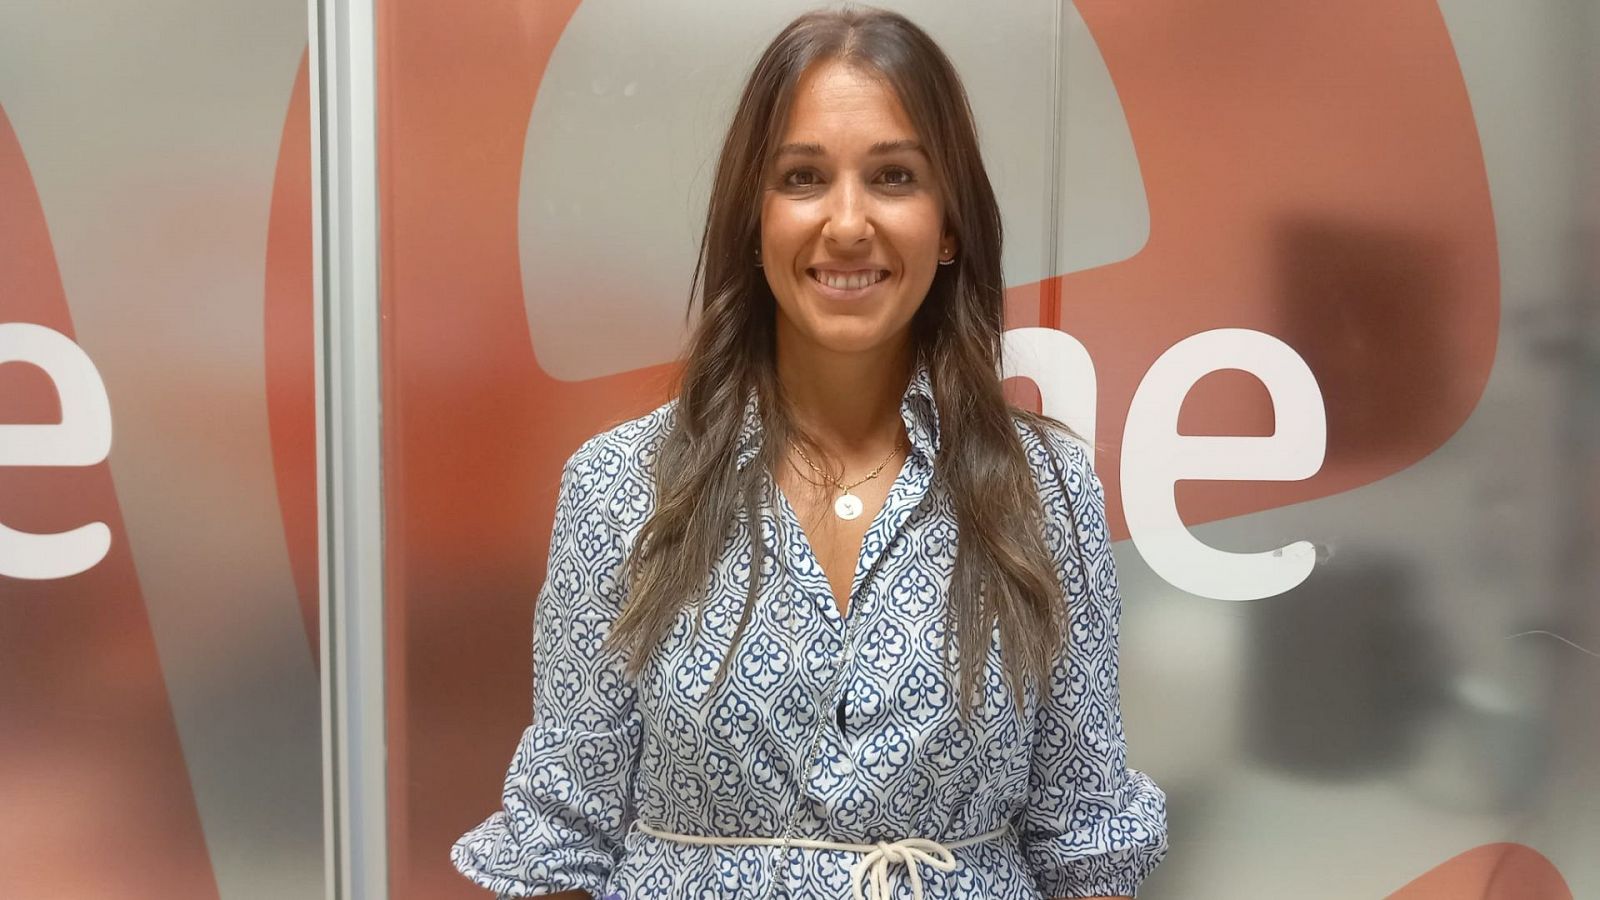 Las Mañanas de RNE - Alexandra Martínez-Azpiazu, Grupo II de Protección al Menor: "España es uno de los primeros países consumidores de pornografía infantil" - Escuchar ahora